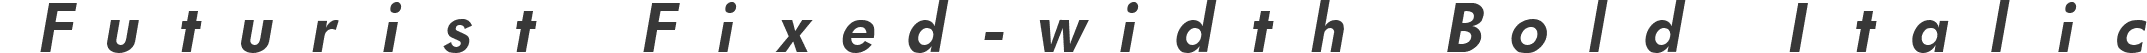 Futurist Fixed-width Bold Italic